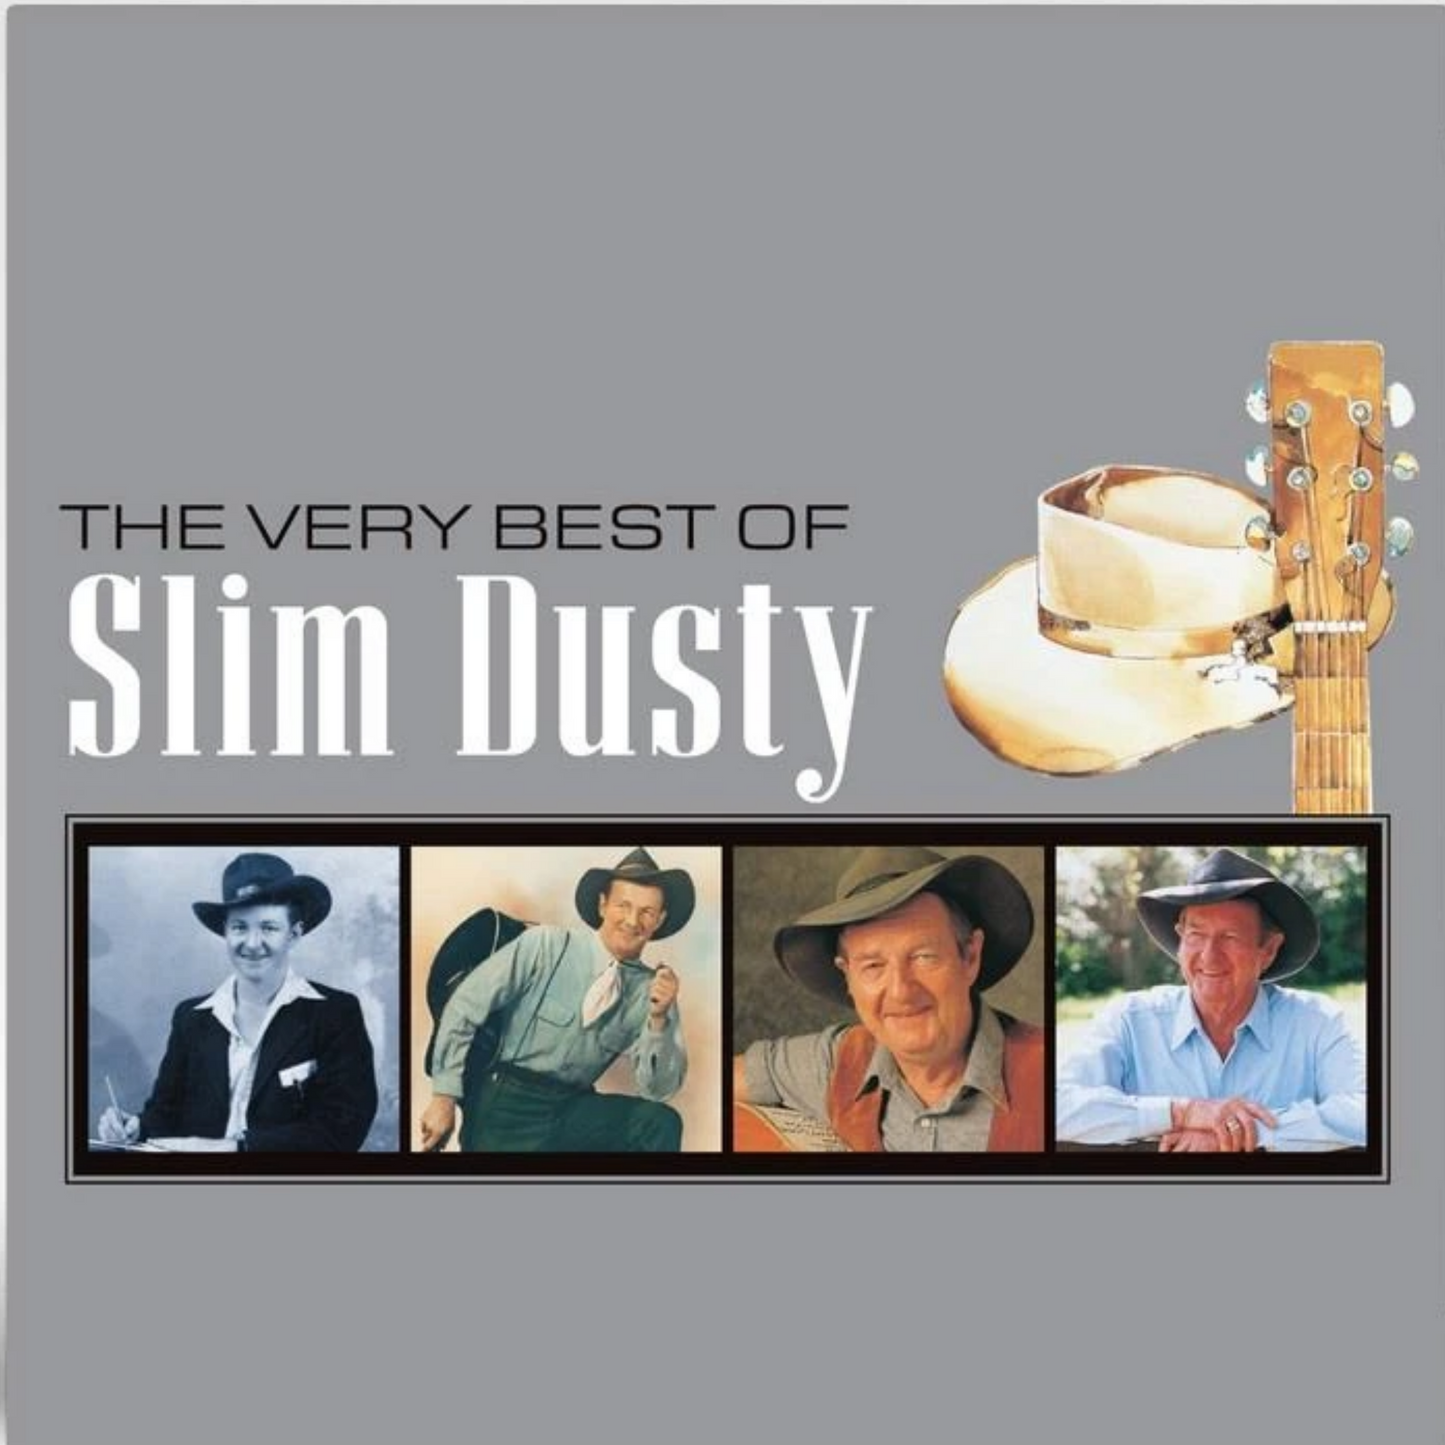 The Very Best of Slim Dusty (2LP Black Vinyl)